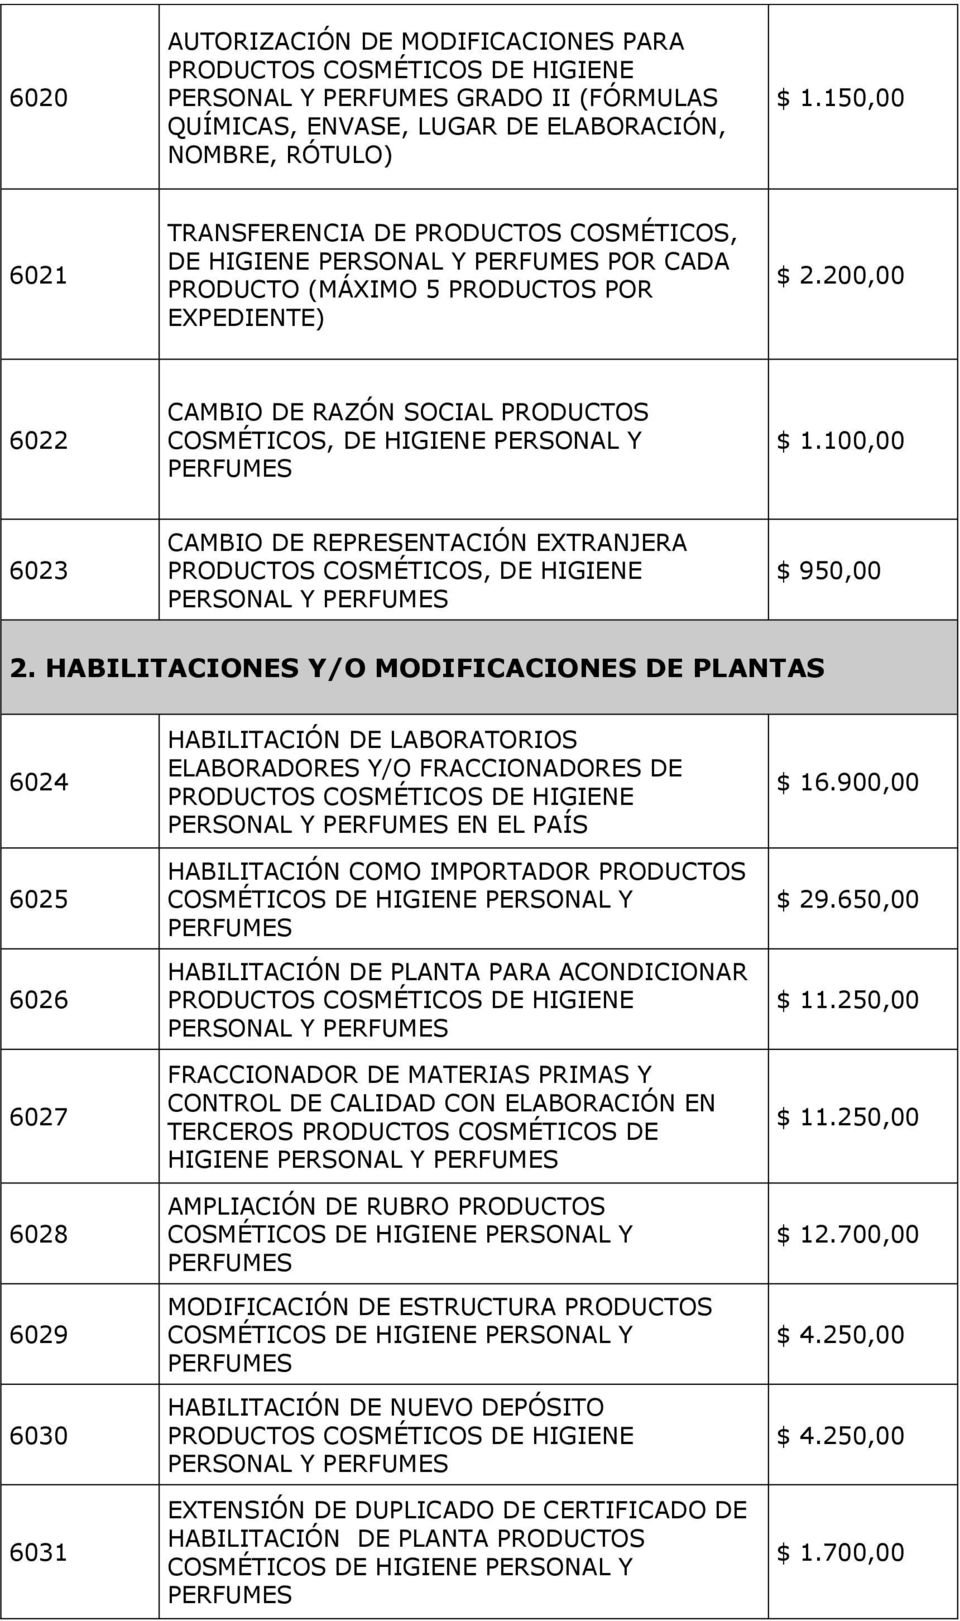 EXTRANJERA PRODUCTOS COSMÉTICOS, DE HIGIENE PERSONAL Y $ 950,00 2.